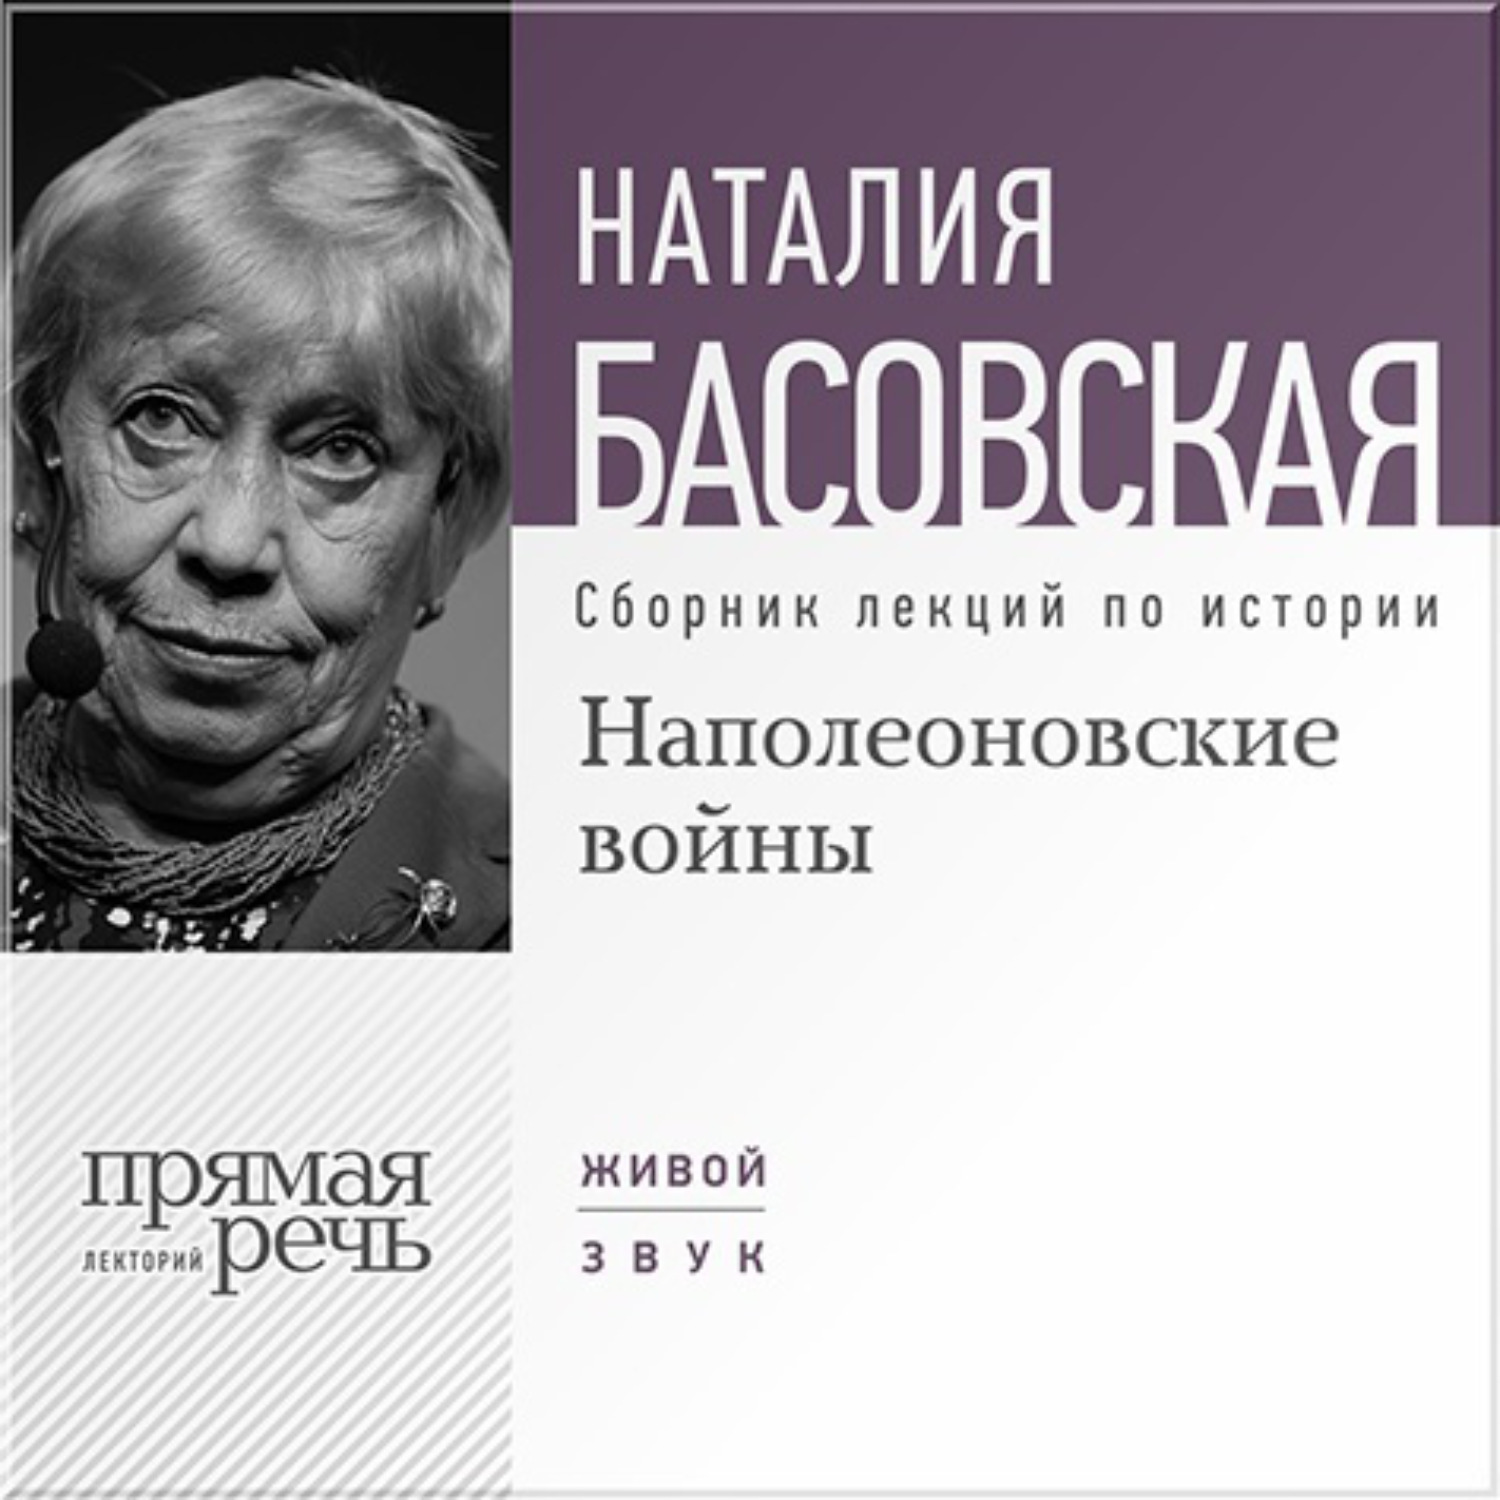 Наталия Басовская лекции по истории